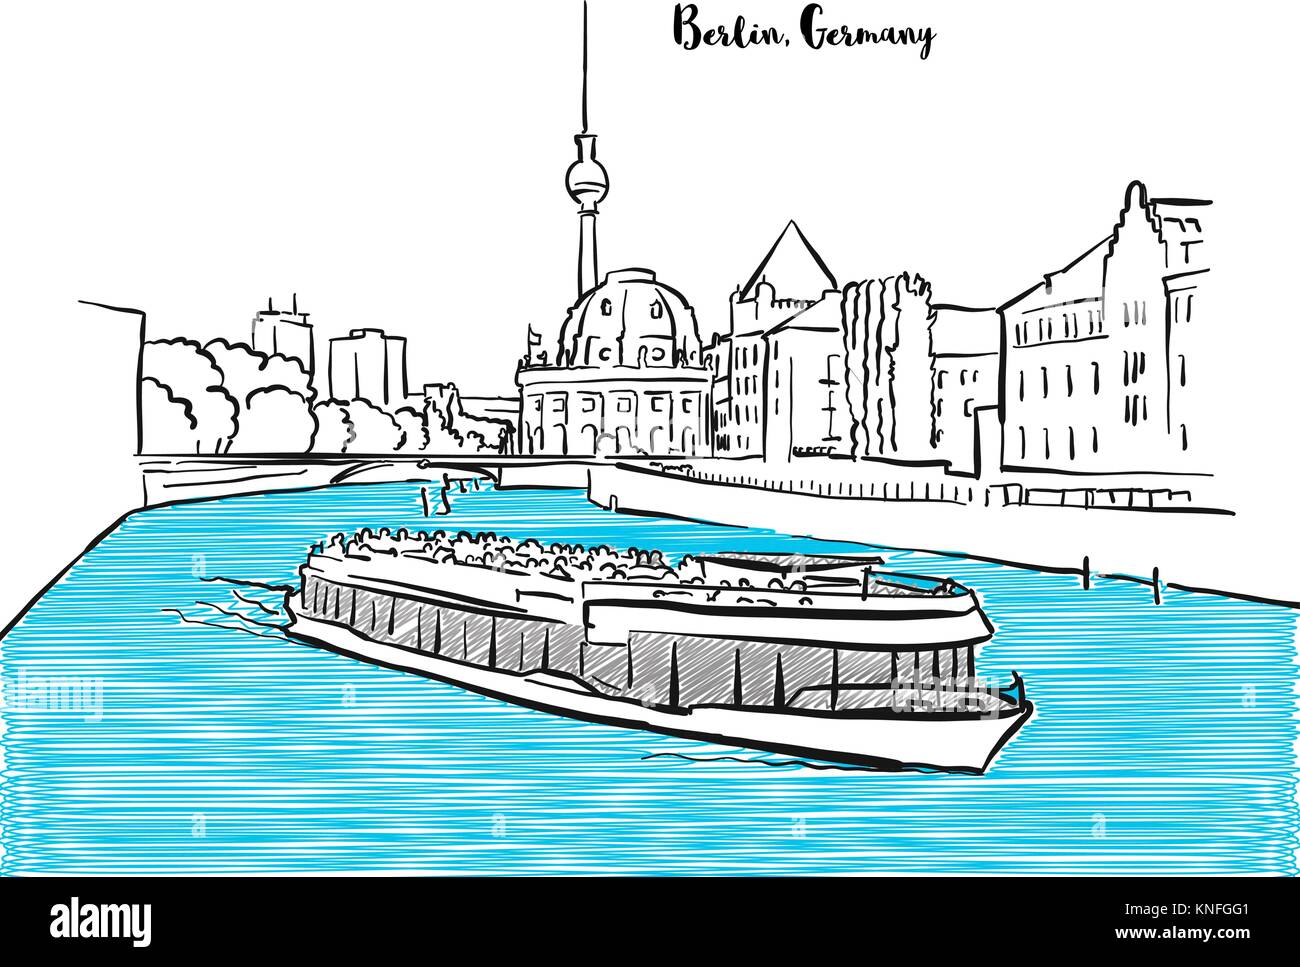 Berlin Sehenswürdigkeiten panorama Skizze. Stadtbild wit Fernsehturm, Bode Museum, Boot und Spree. Vektor Zeichnung Stock Vektor